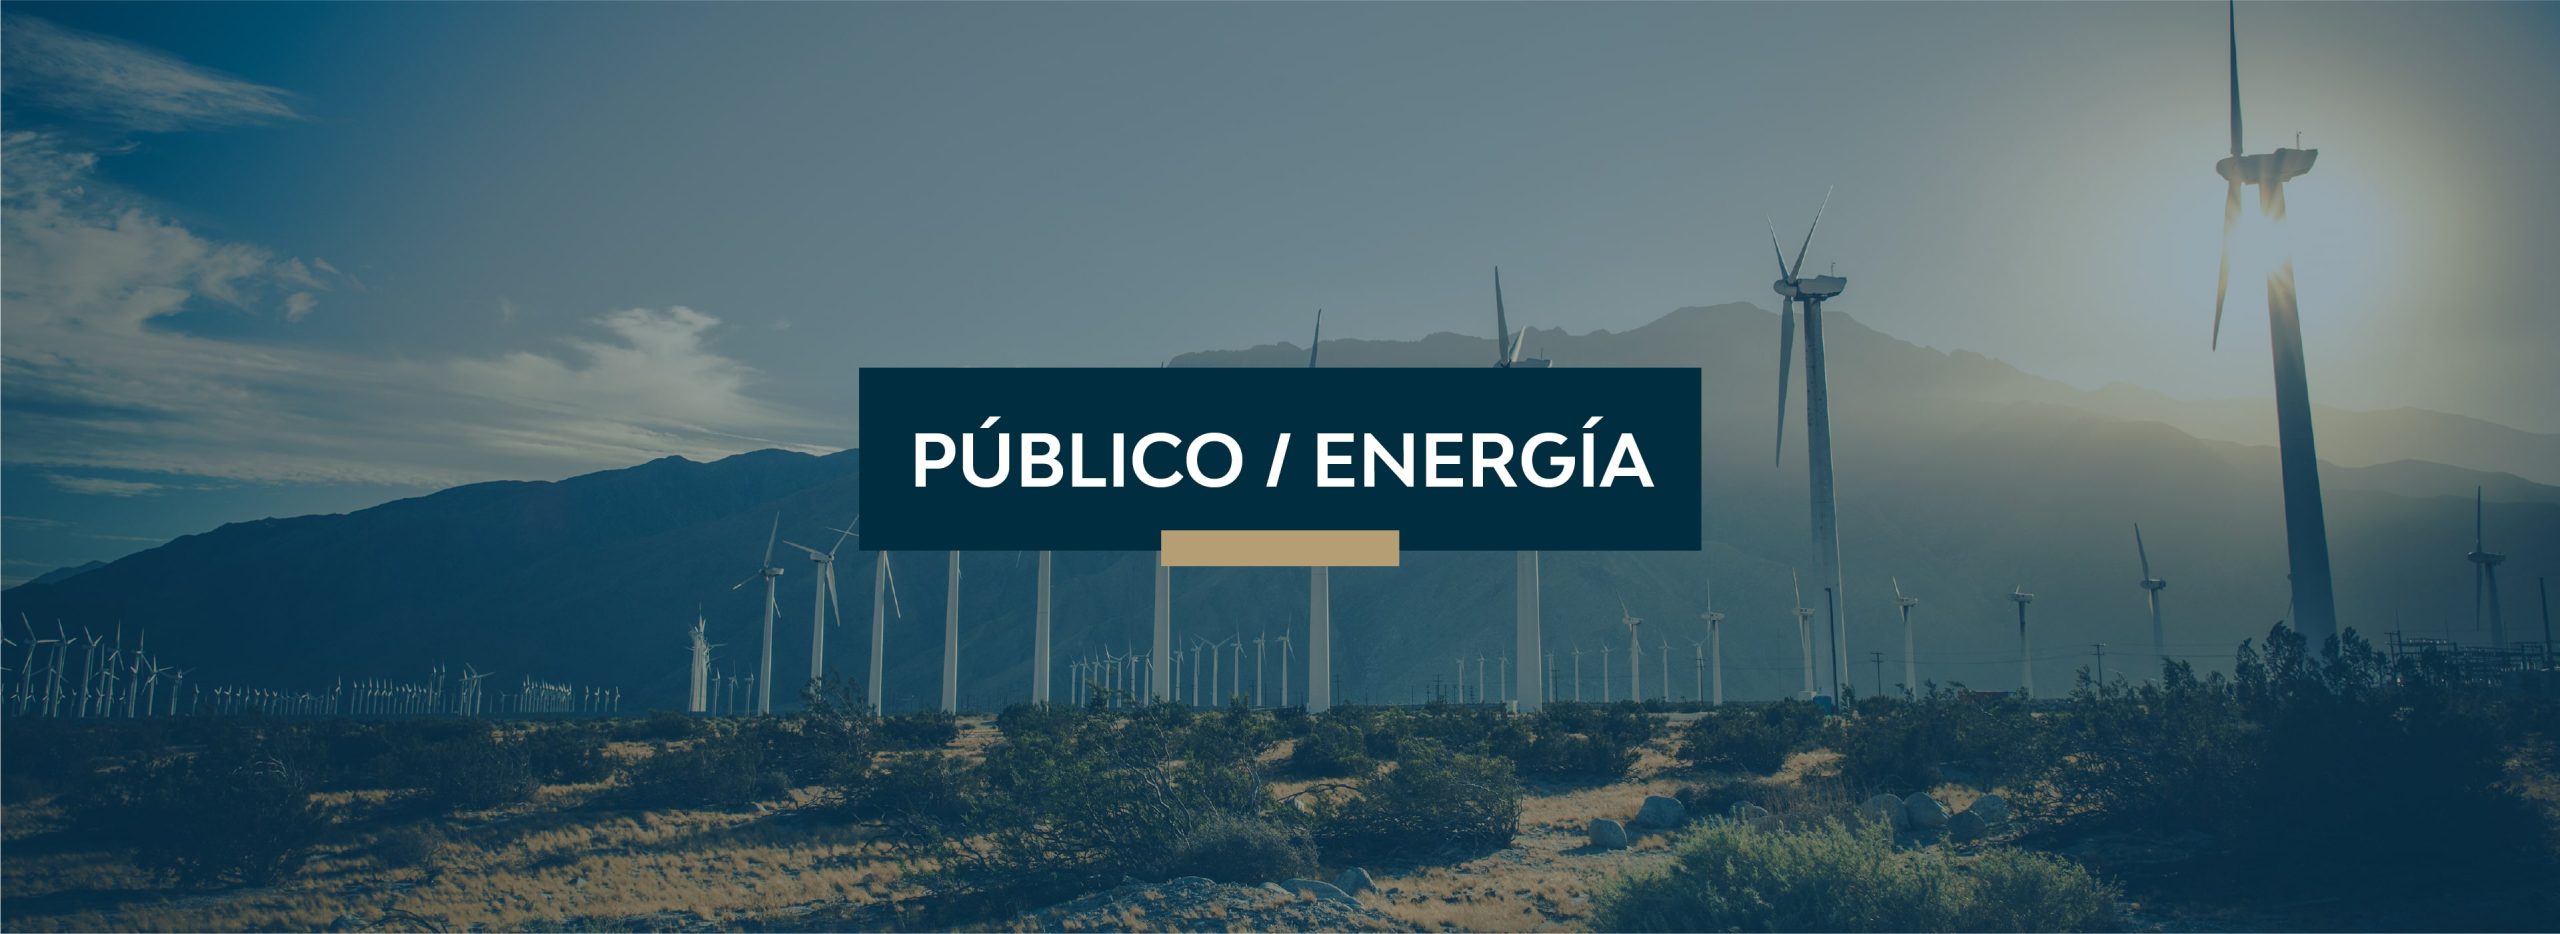 Público / Energía